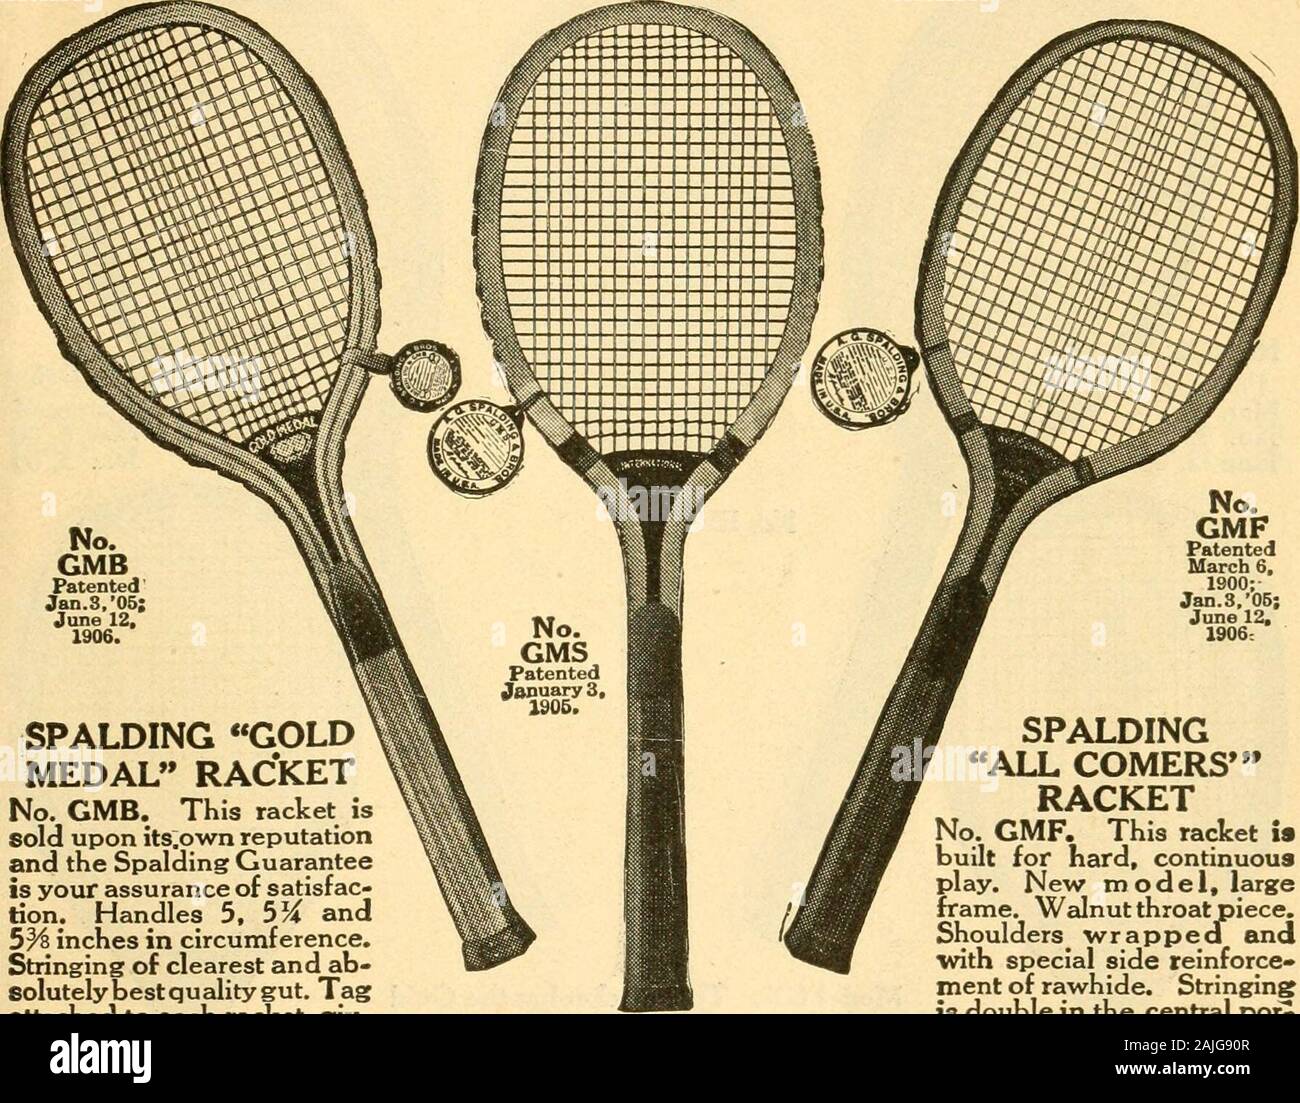 La imprimación de tenis . Marca^^Kf Spalding raquetas de tenis de césped.  No.GMB Ene patentadoS.OSi el 12 de junio. 1906. SPALDING GOLDMEDAL RAQUETA  No. GMB. Esta raqueta issold.tras su propia reputationand la